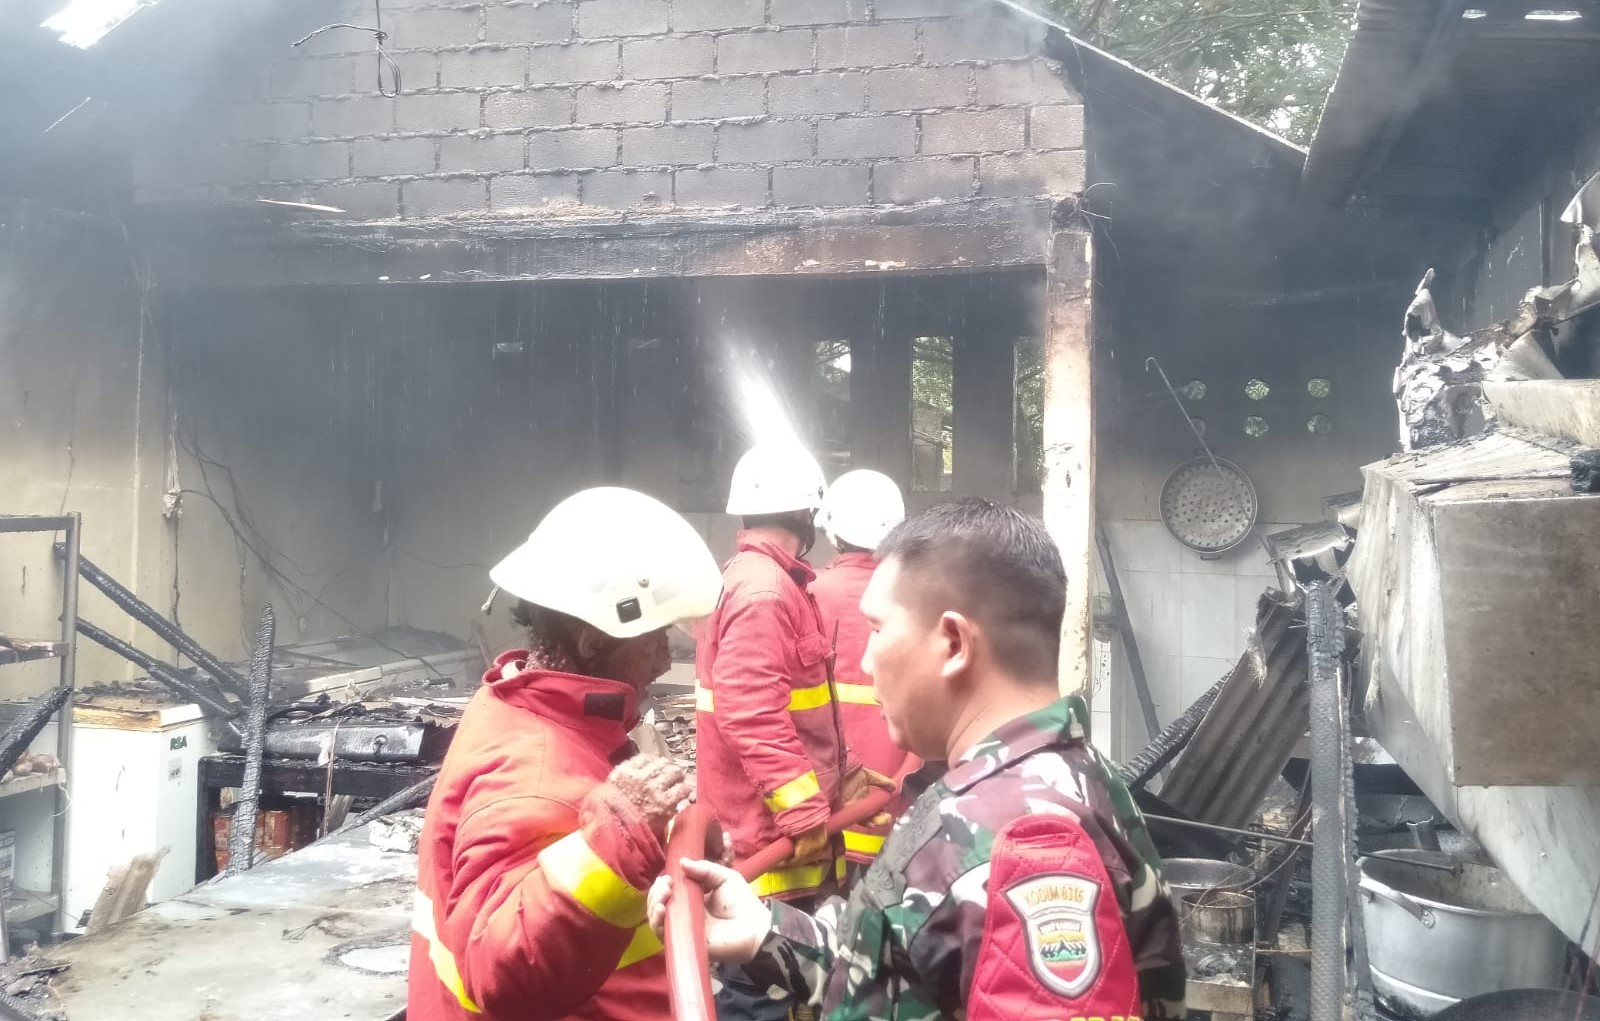 Siang Bolong Restoran di Sungai Kecil Bintan Hangus Terbakar